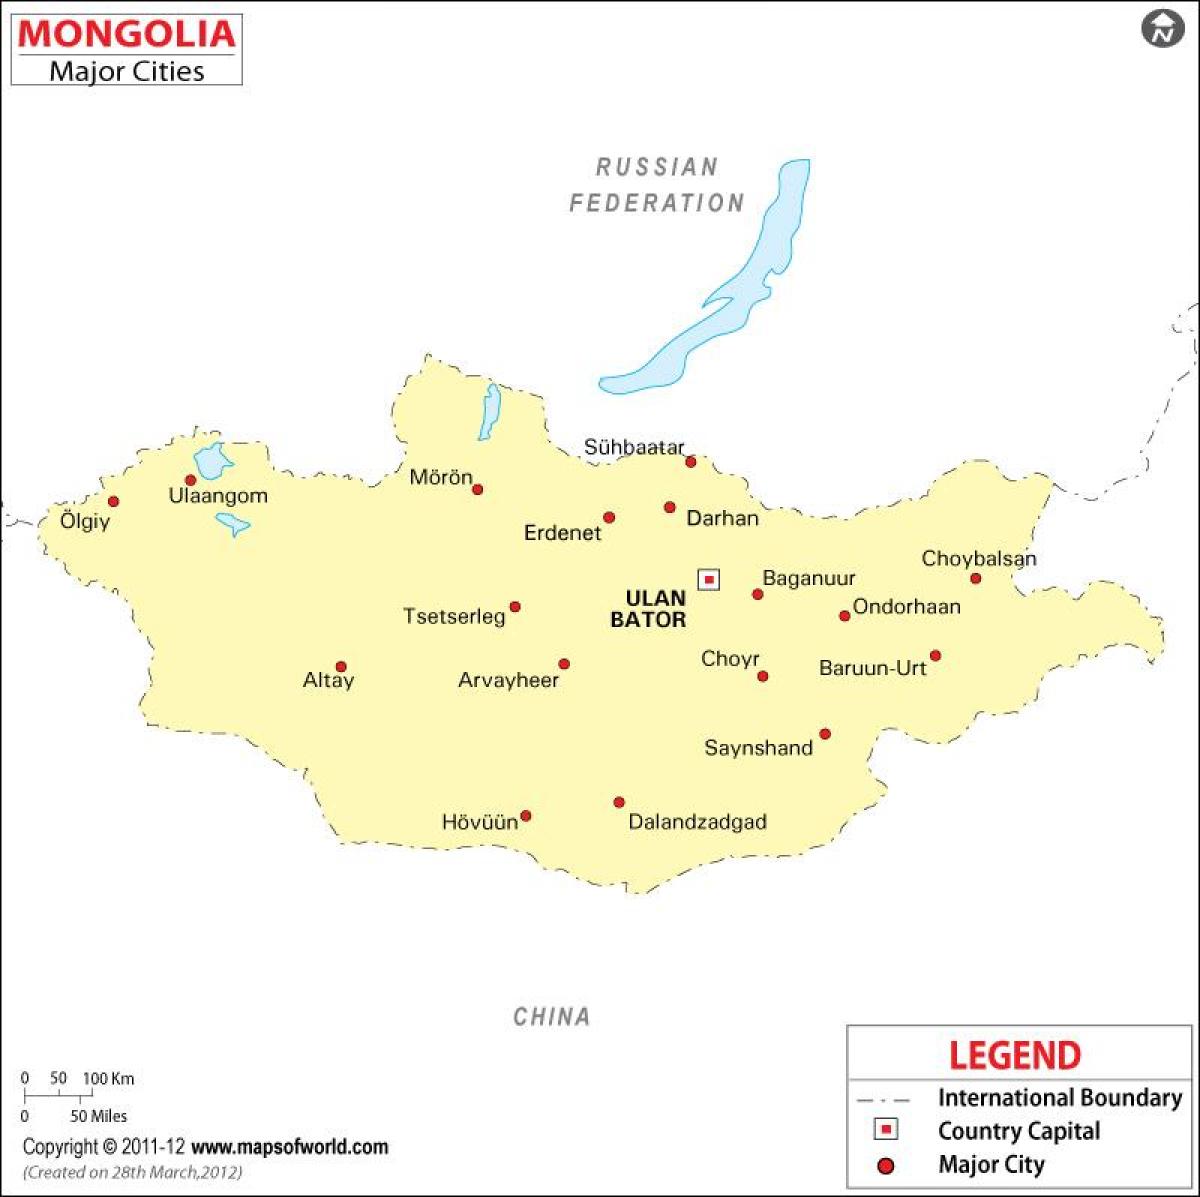 मंगोलिया के नक्शे के साथ शहरों